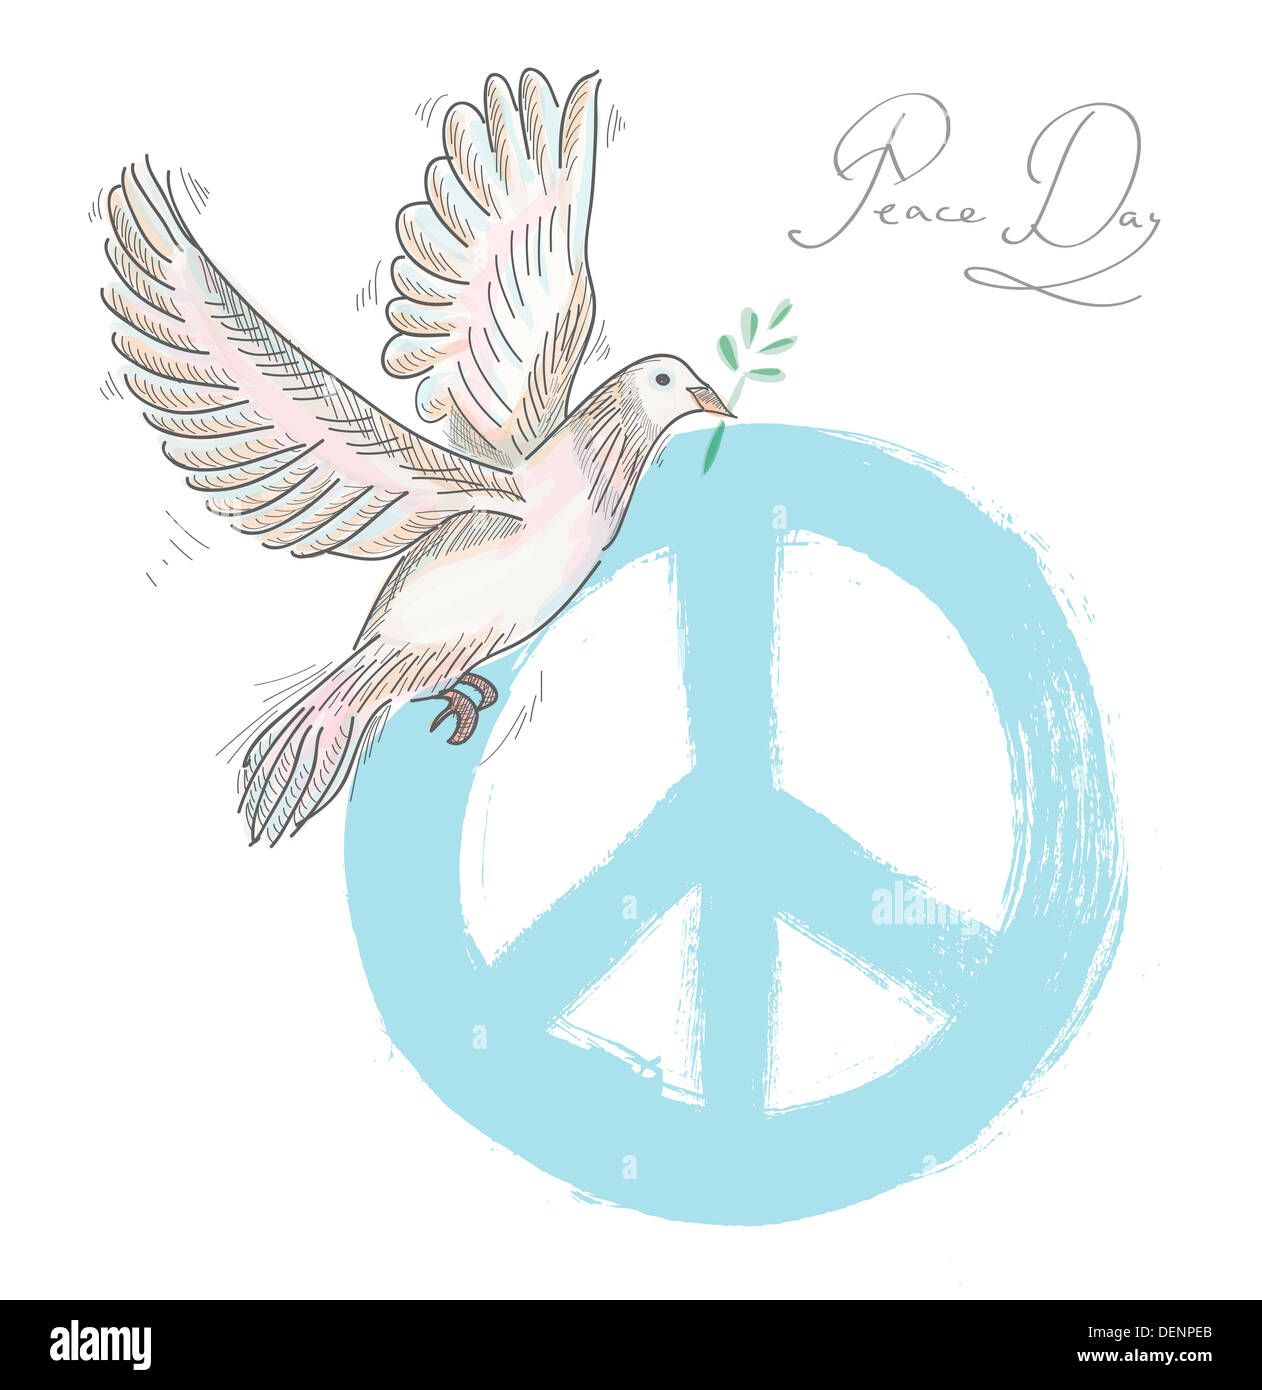 La journée de la paix à la main composition : symbole bleu d'oiseaux et de la colombe sur fond de texture. Fichier vectoriel EPS10 organisé en couches pour l'édition facile. Banque D'Images